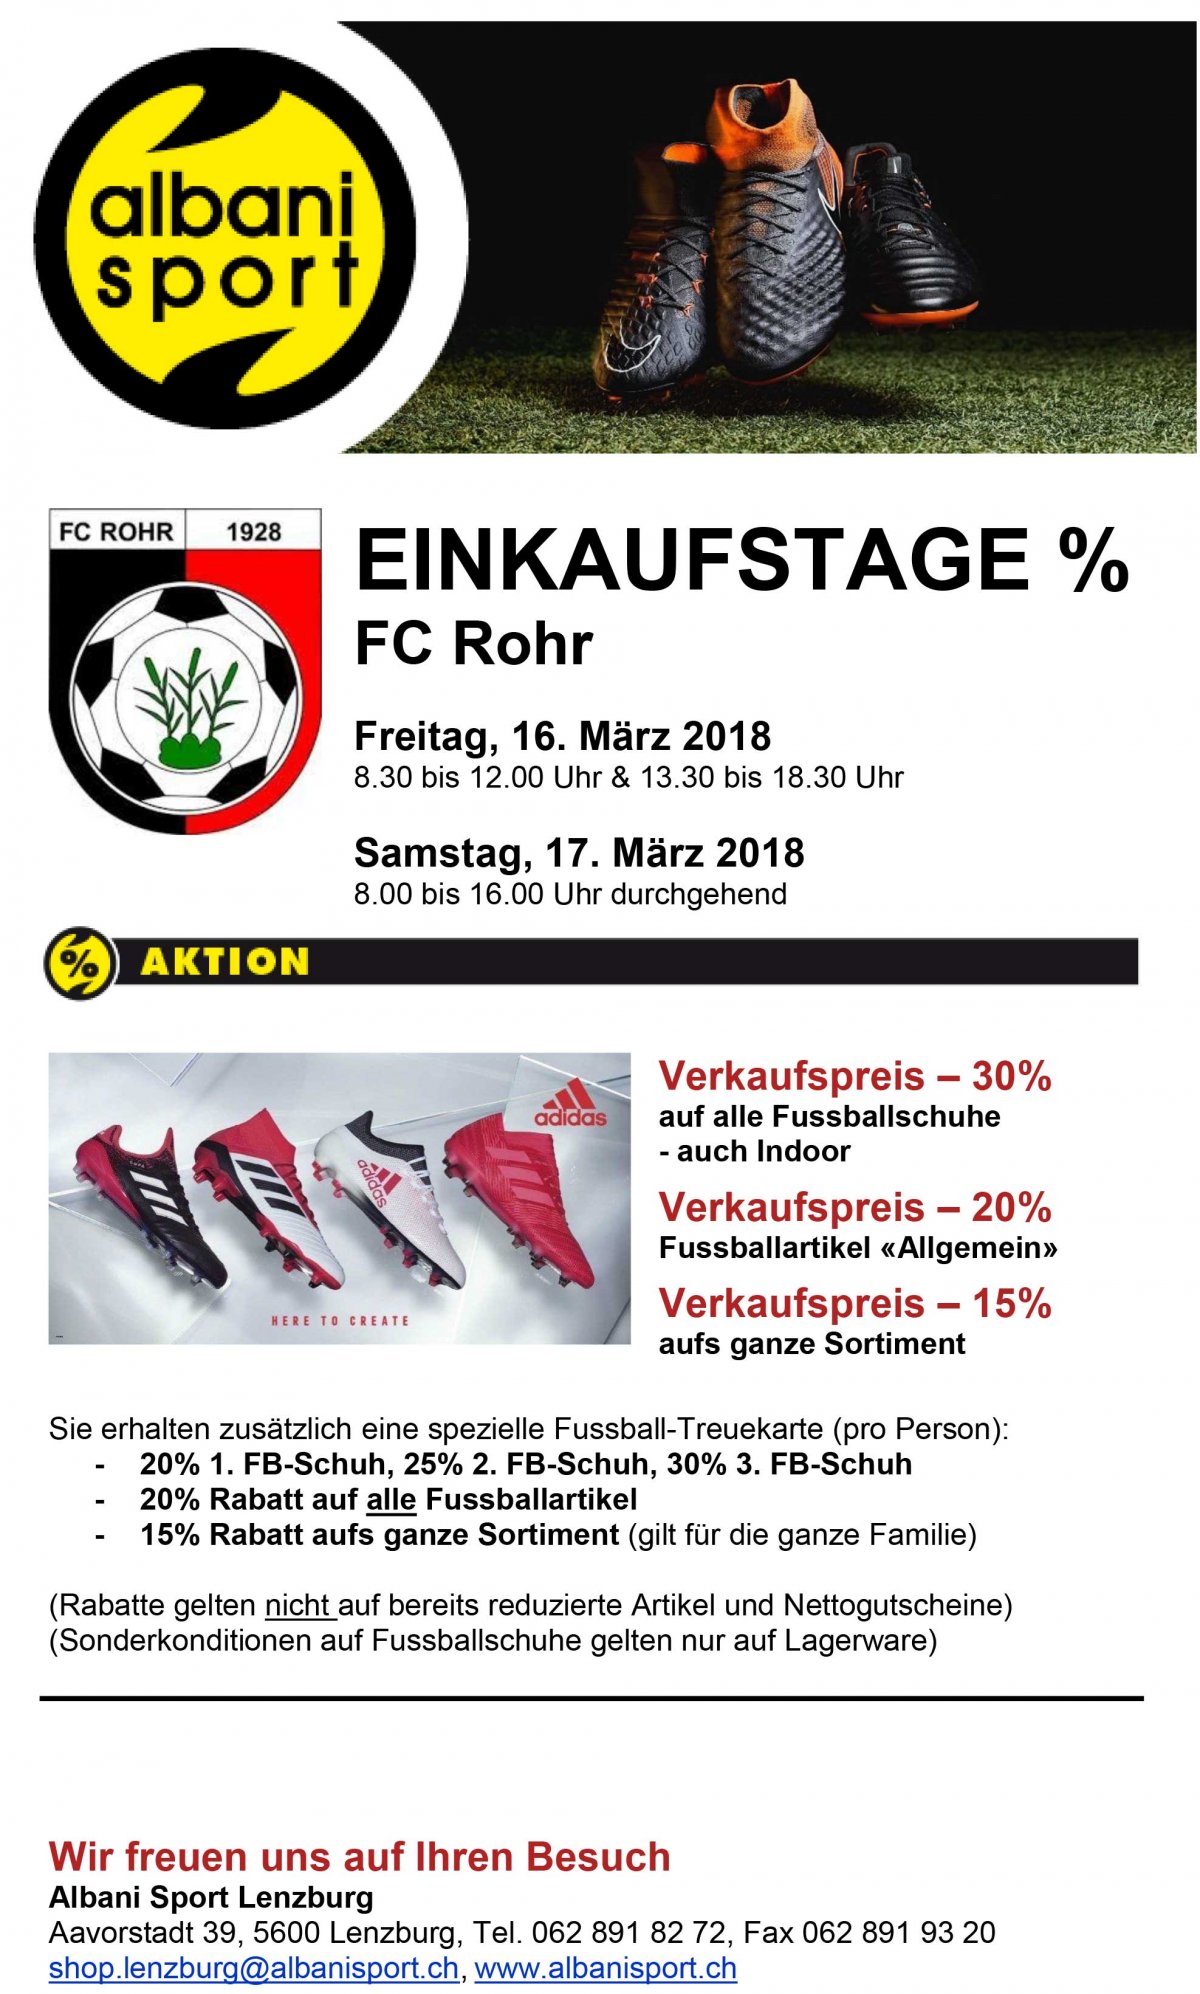 EINKAUFSTAGE 2018 FC Rohr